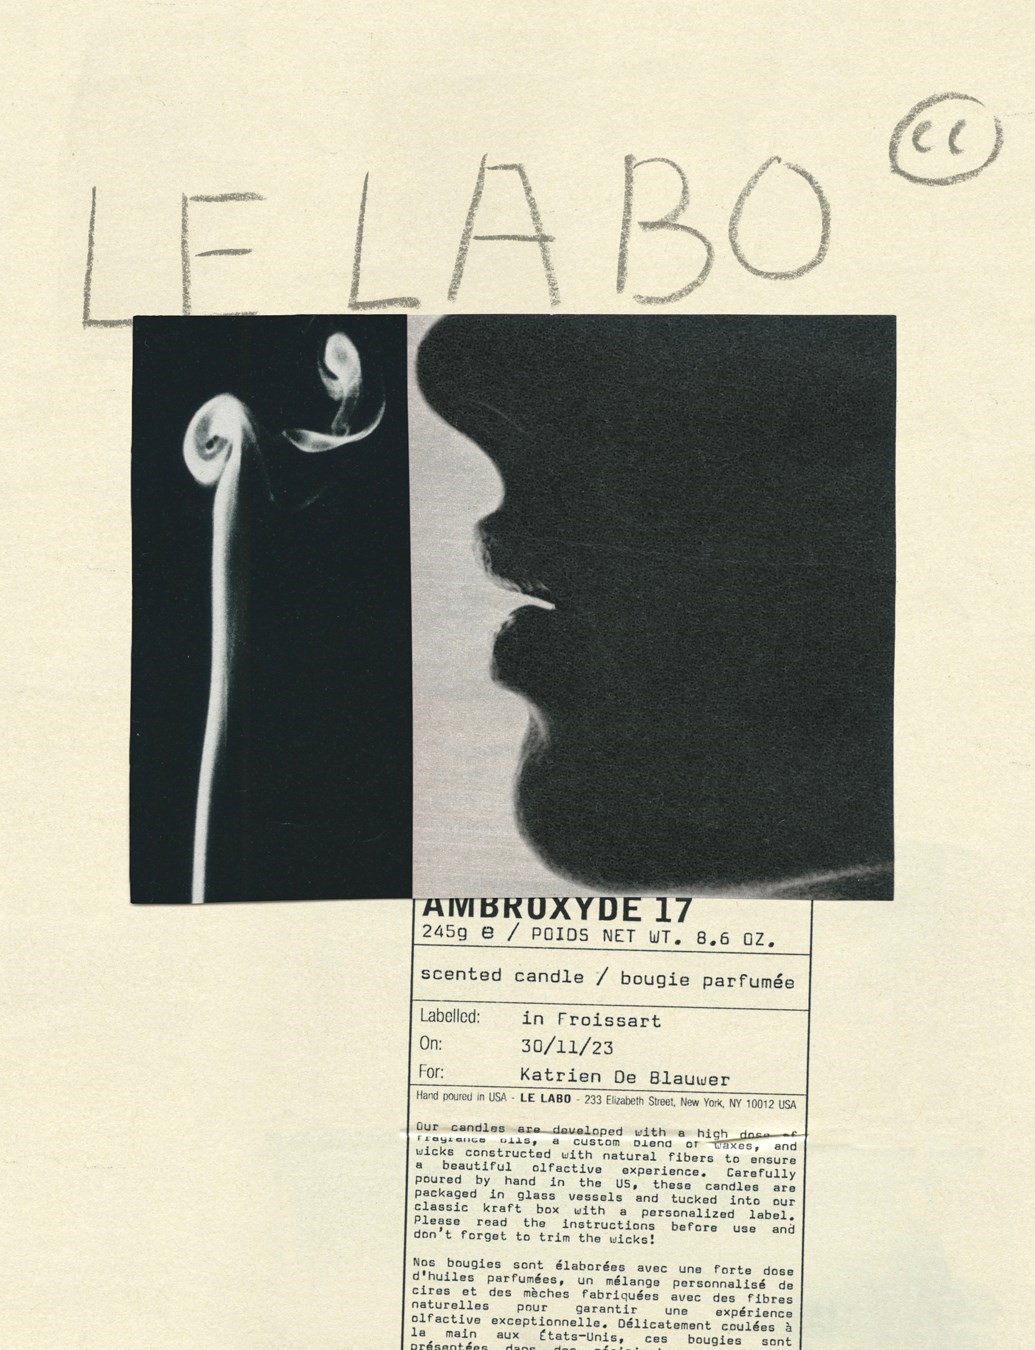 Le Labo by Katrien De Blauwer